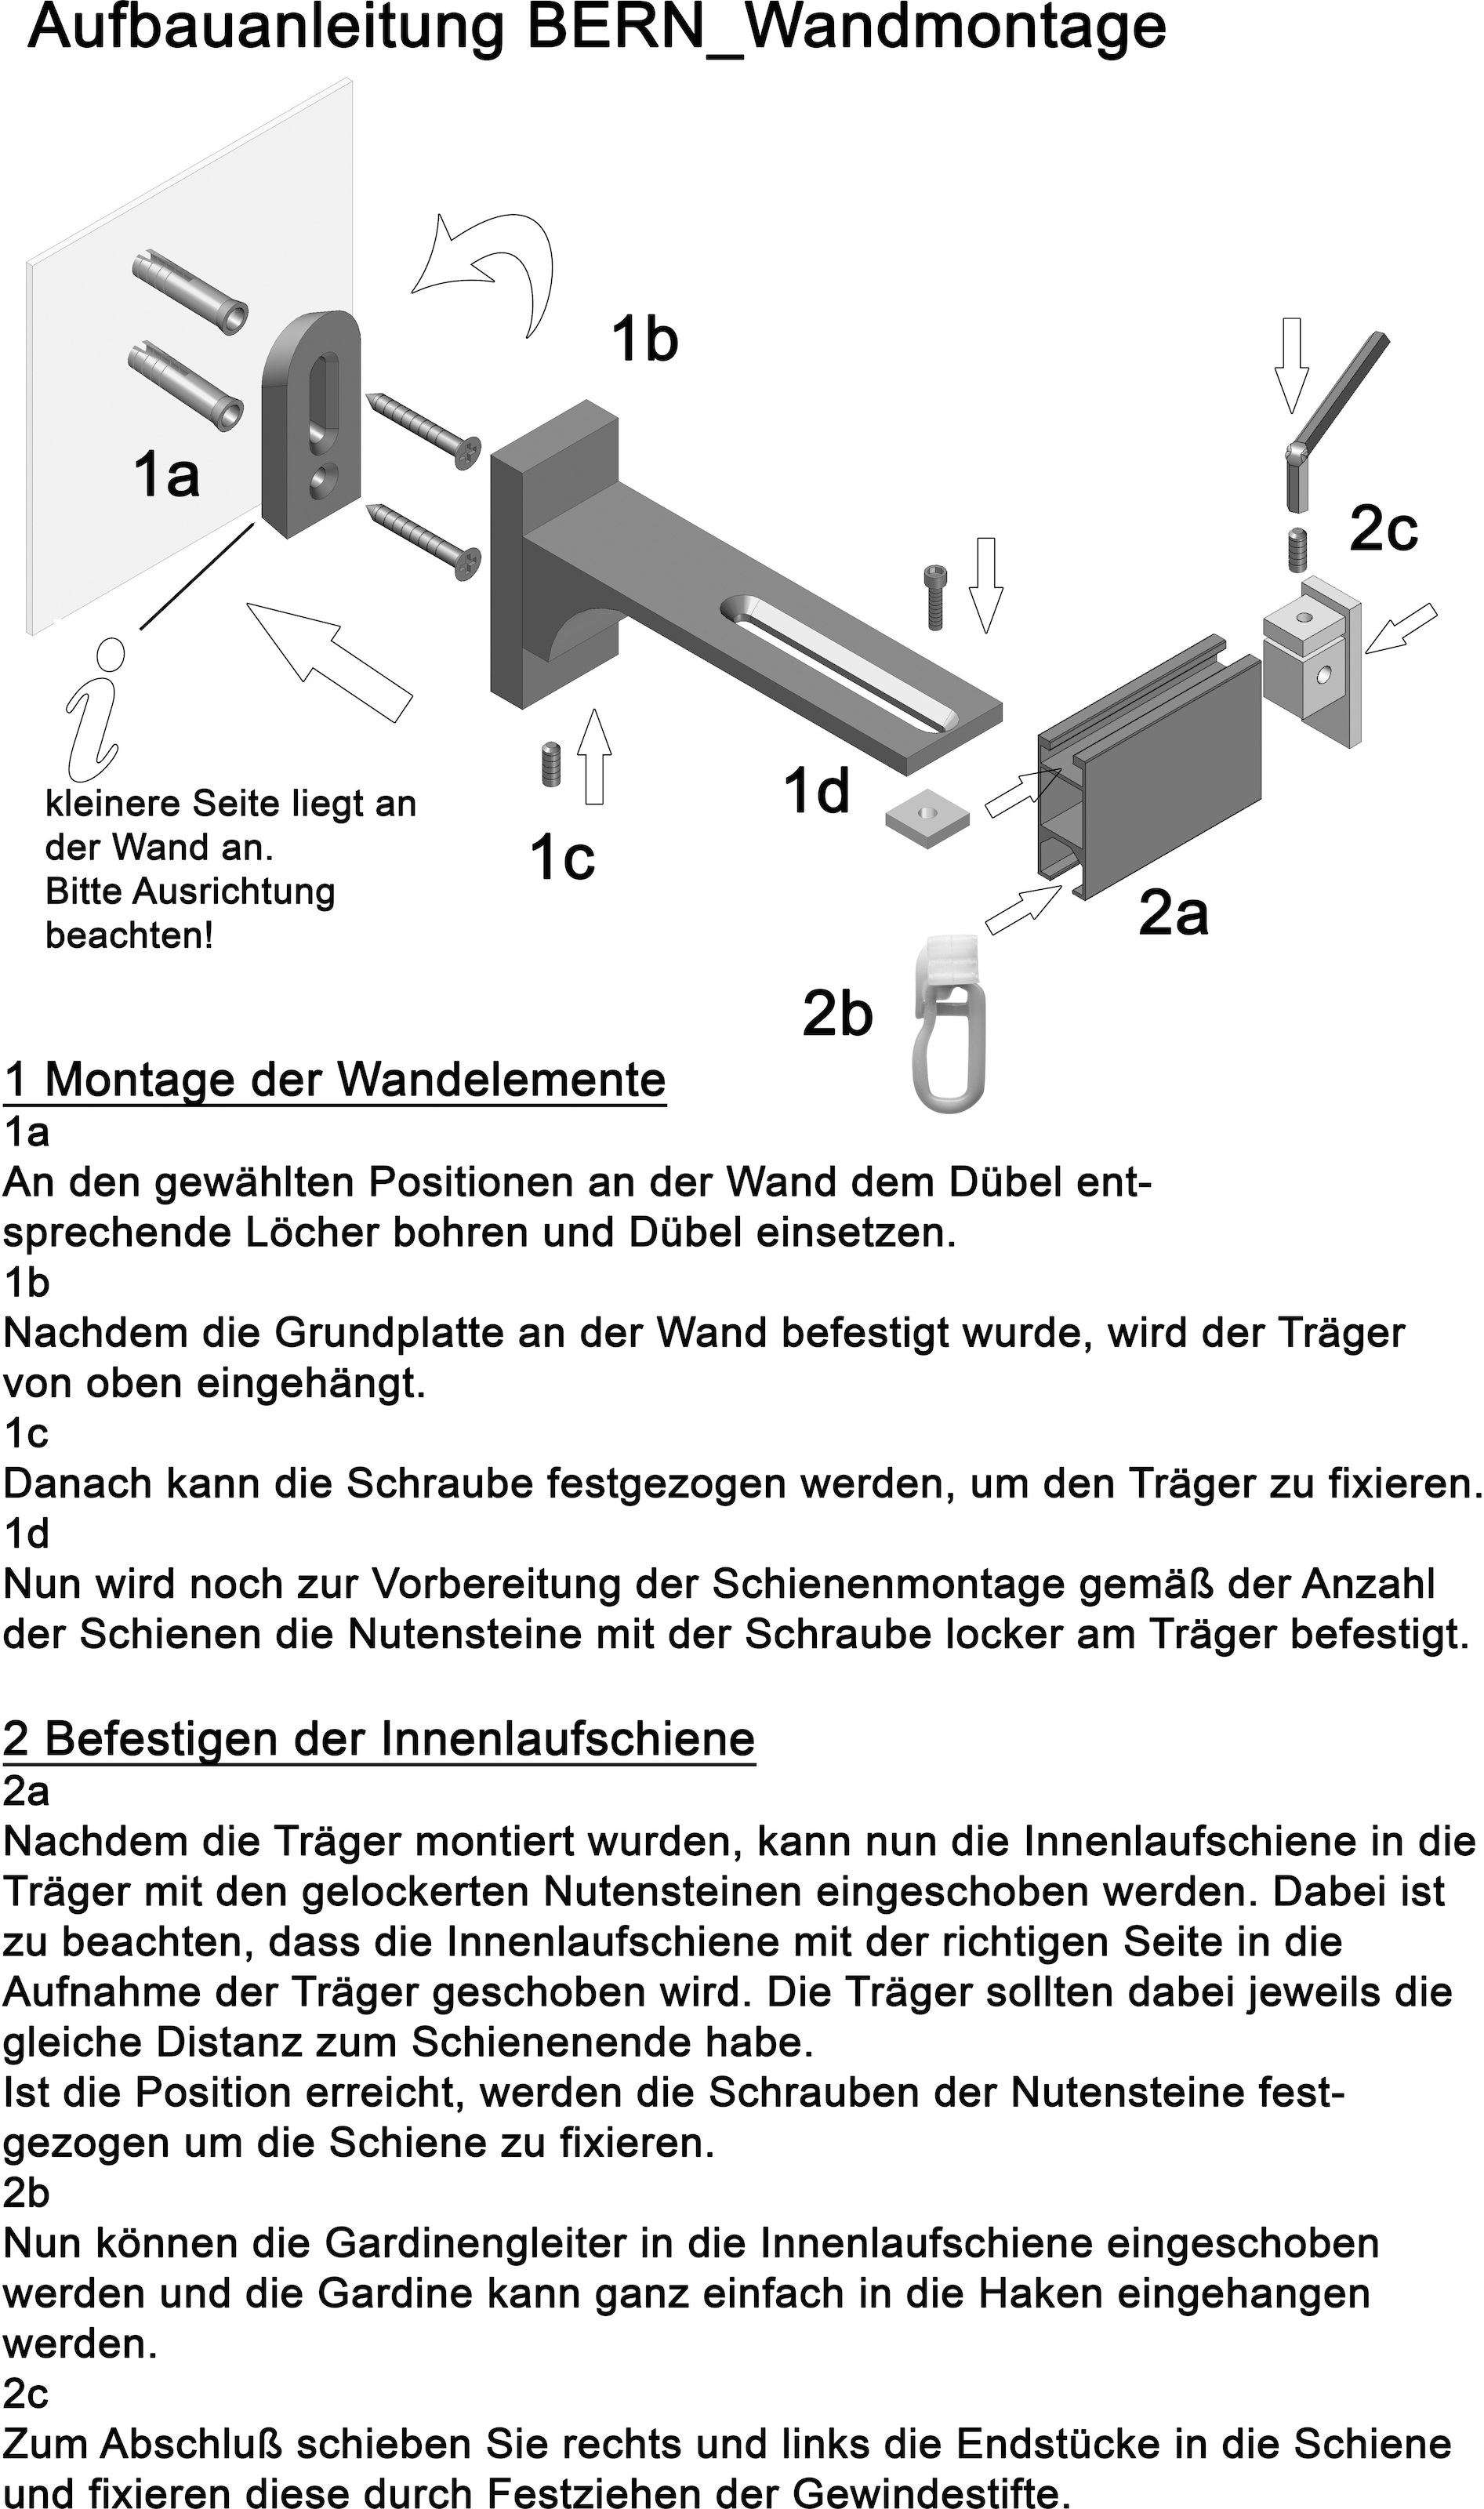 Montagematerial »Bern«, 1 indeko Komplett-Set Gardinenstange und Gleitern Wunschmaßlänge, inkl. läufig-läufig, Innenlauf